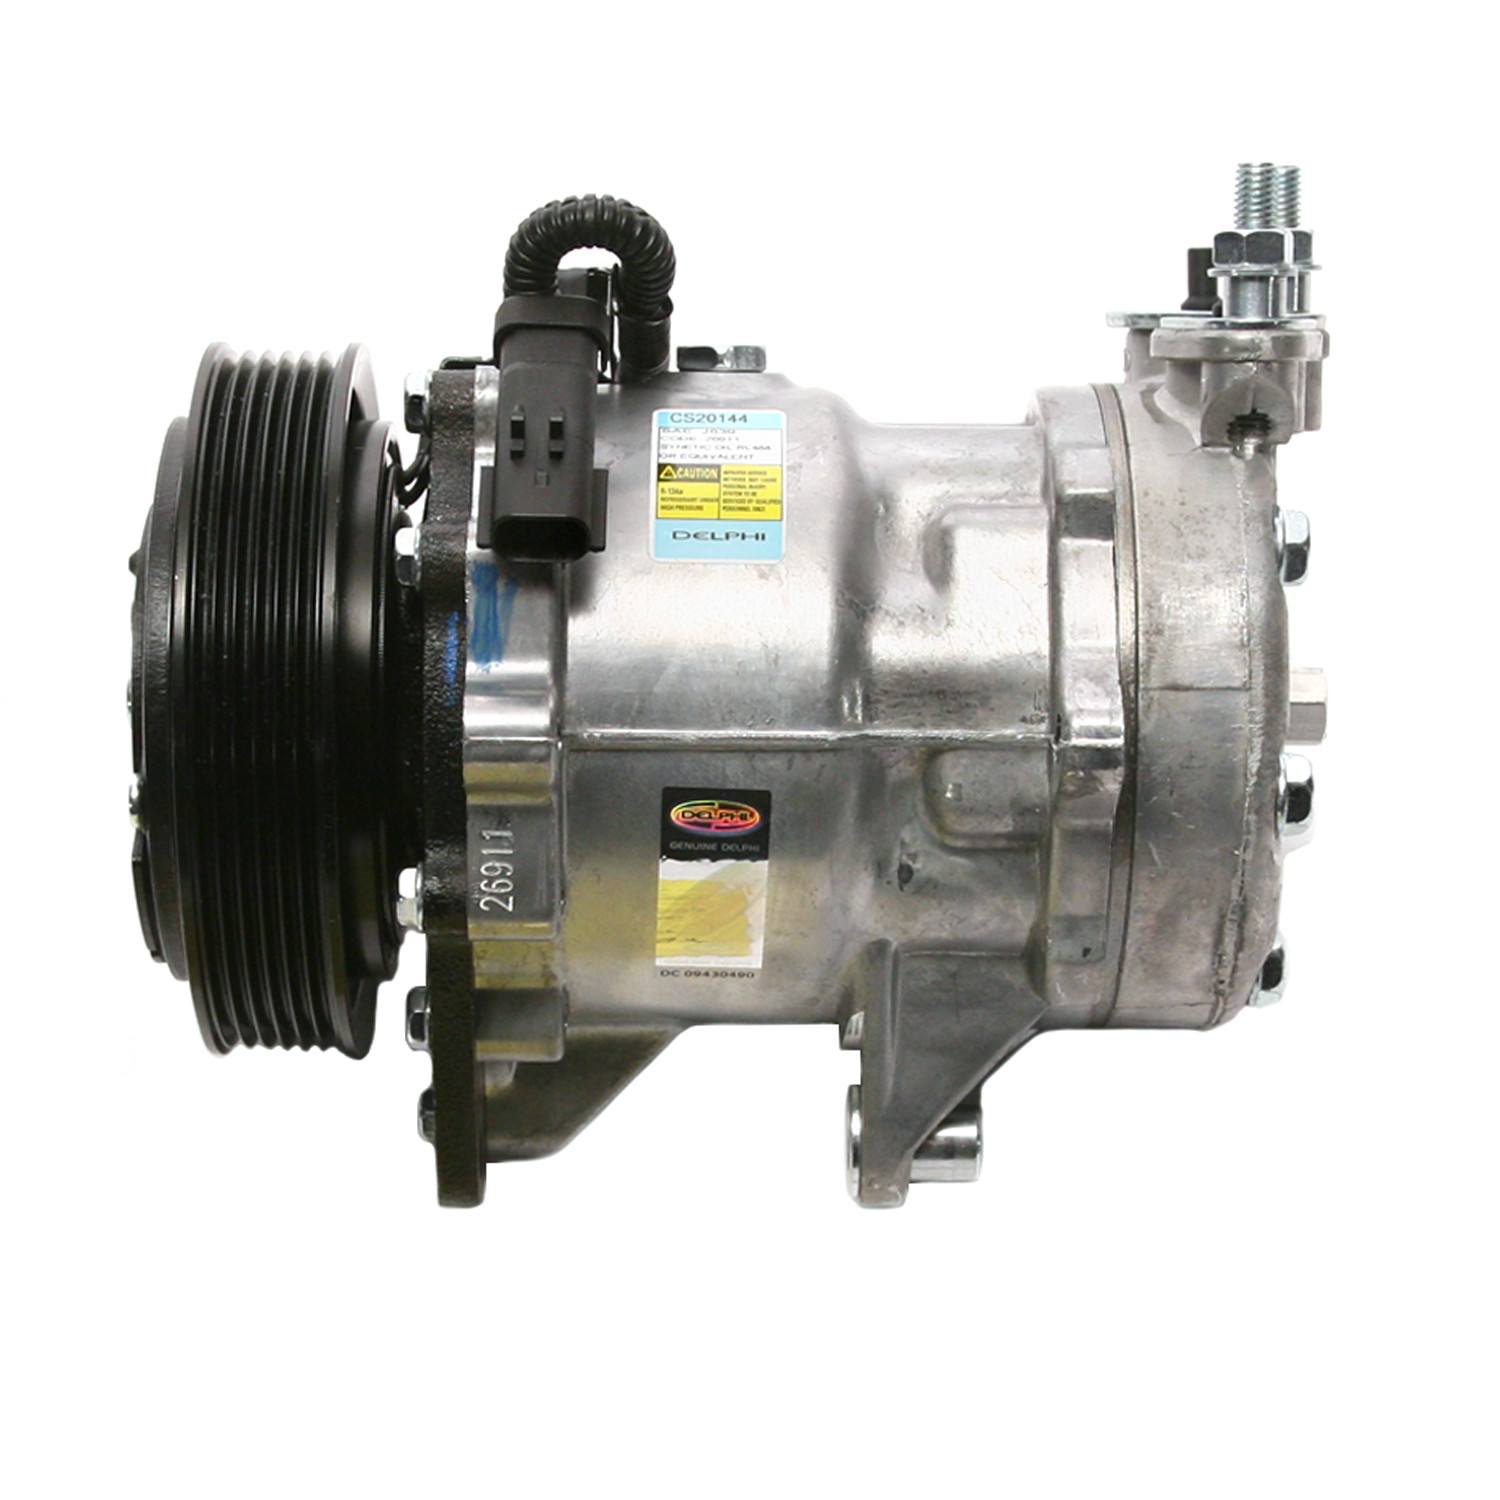 DELPHI - A/C Compressor - DPH CS20144